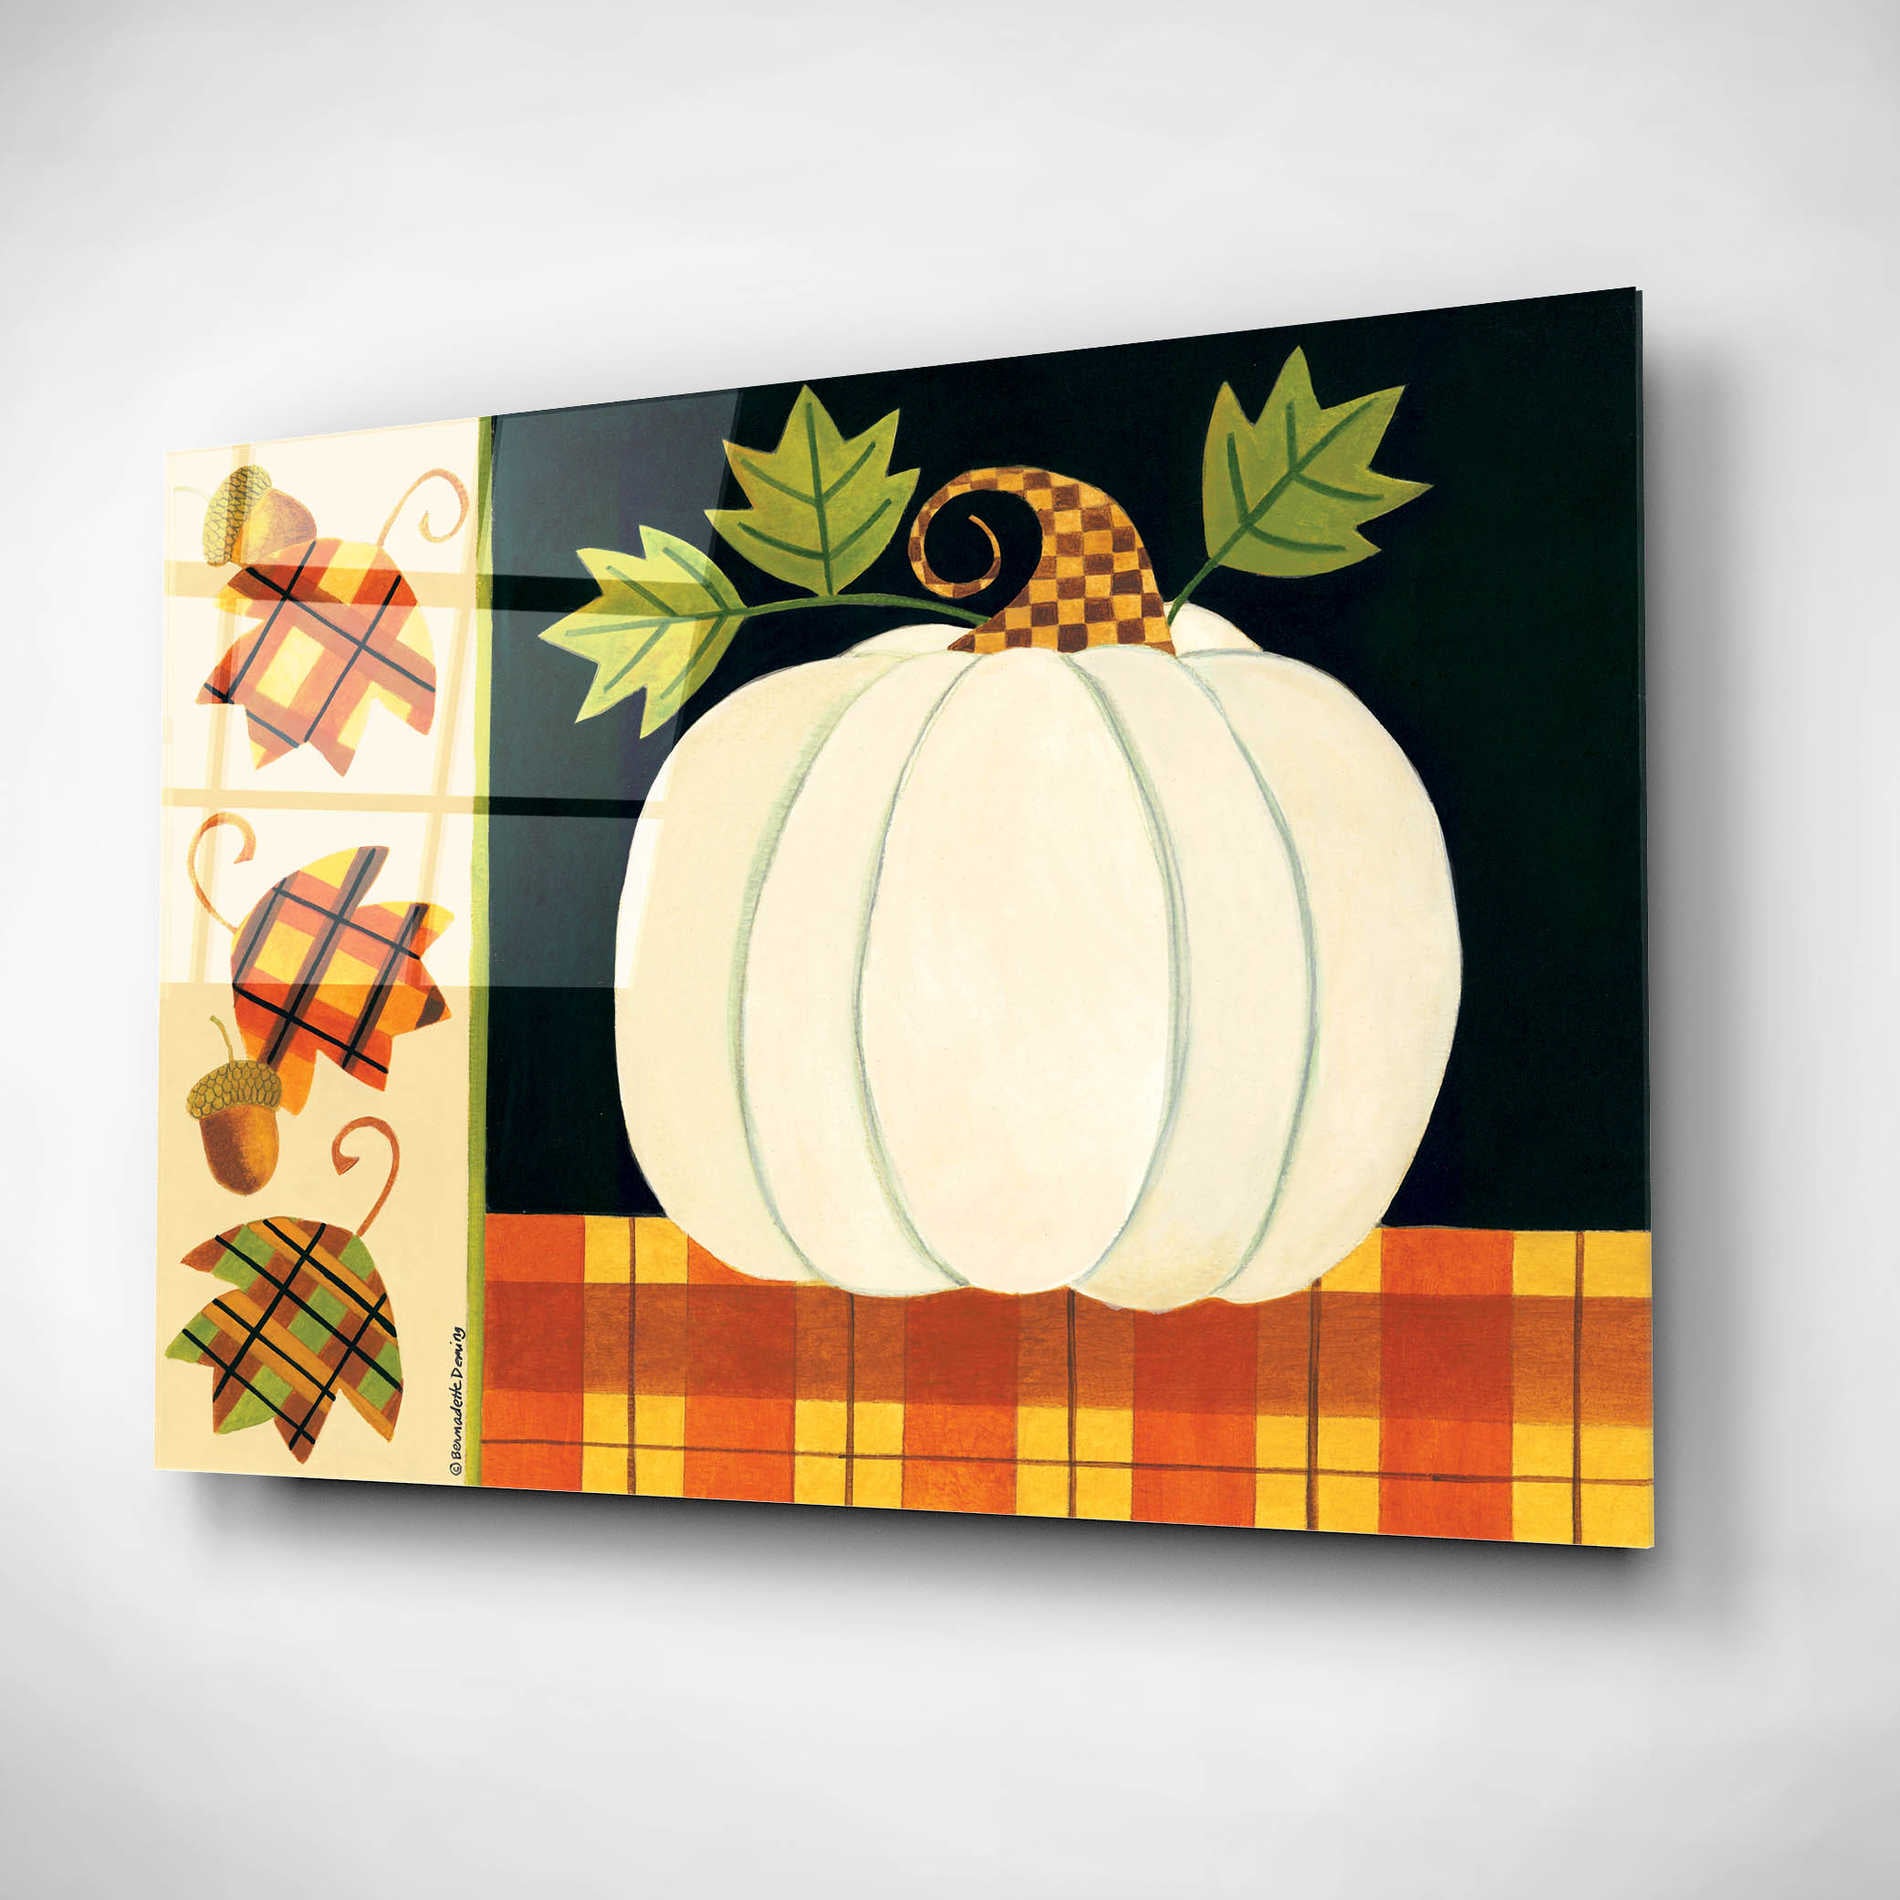 Epic Art "White Pumpkin" by Bernadette Deming, Acrylic Glass Wall Art,24x16